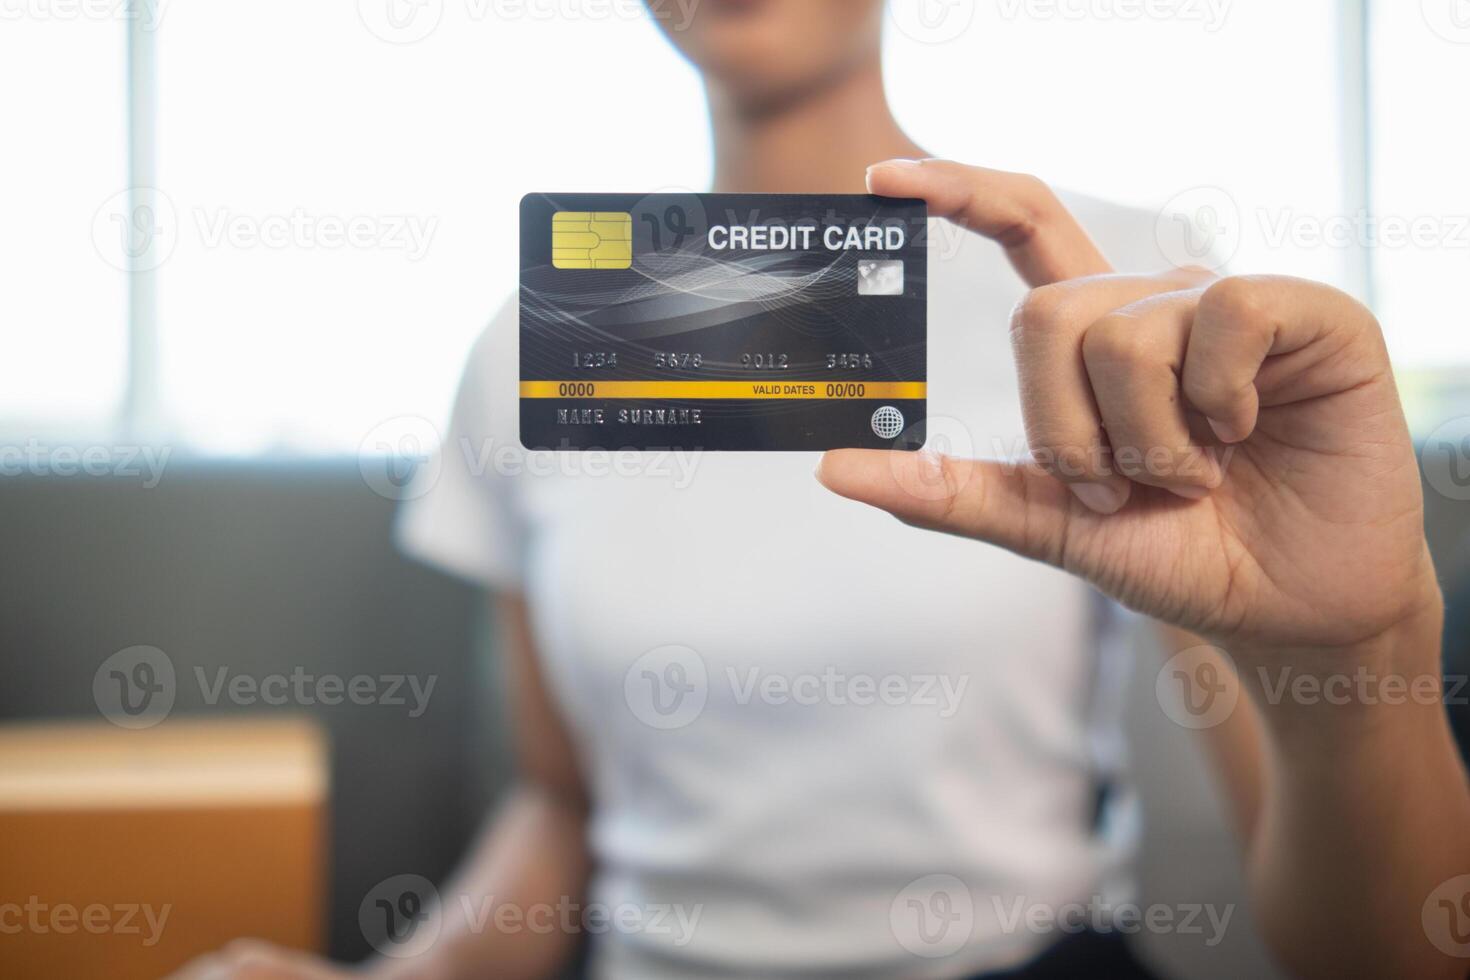 crédito cartão estão popularmente usava hoje era Porque elas estão conveniente para compra produtos a partir de regular lojas e conectados lojas pode compra produtos através inscrição de pagando com crédito cartão. foto